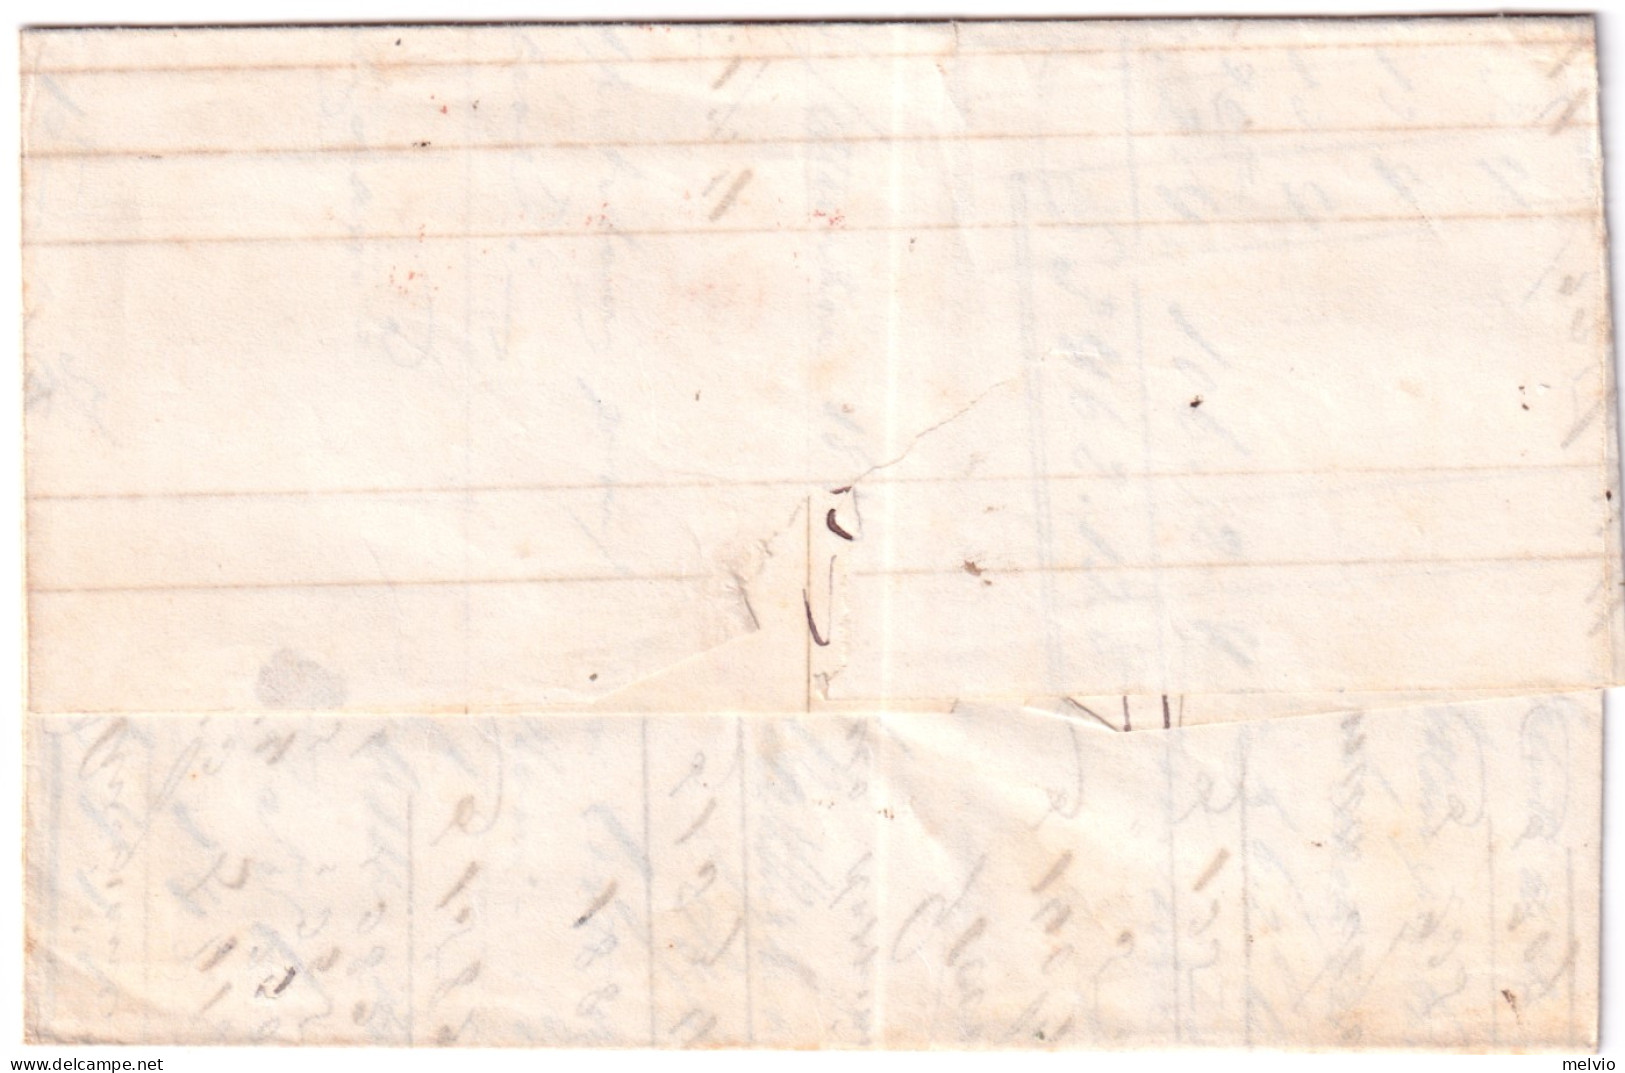 1832-LIVORNO SD In Rosso Arrivo Su Lettera Completa Testo Da TORINO (18.9) - ...-1850 Préphilatélie